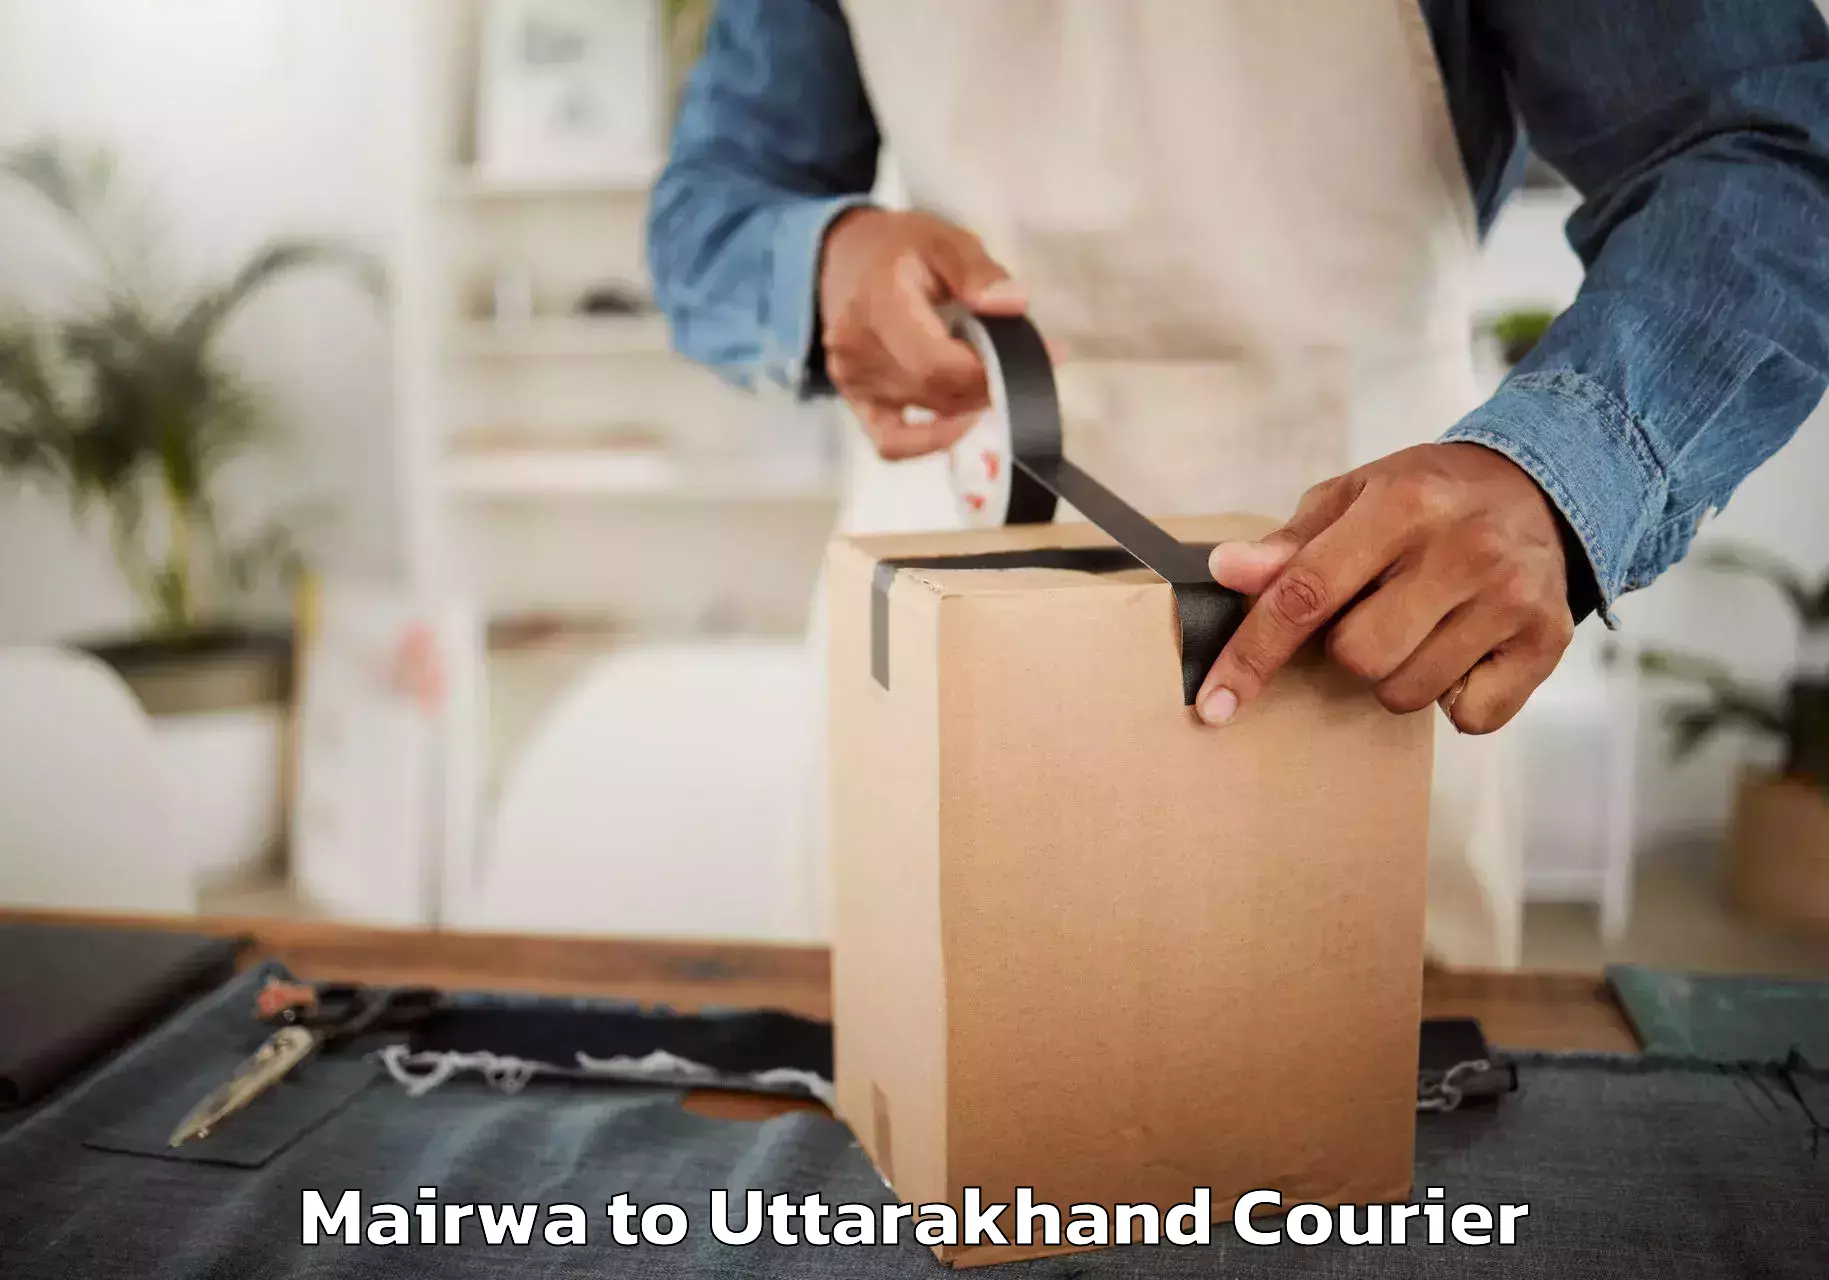 Furniture moving experts Mairwa to Didihat